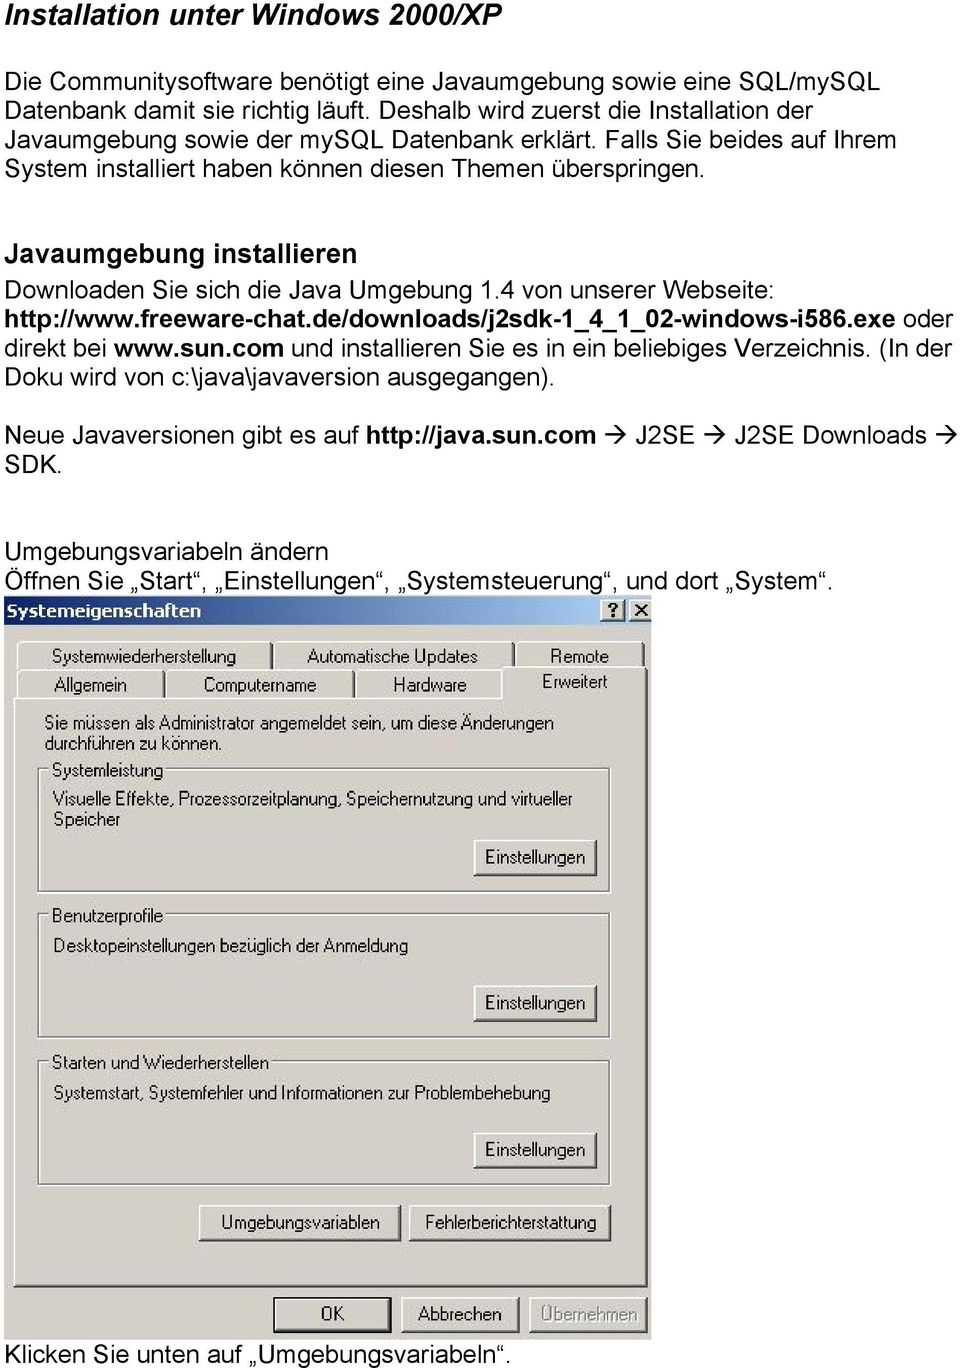 Javaumgebung installieren Downloaden Sie sich die Java Umgebung 1.4 von unserer Webseite: http://www.freeware-chat.de/downloads/j2sdk-1_4_1_02-windows-i586.exe oder direkt bei www.sun.